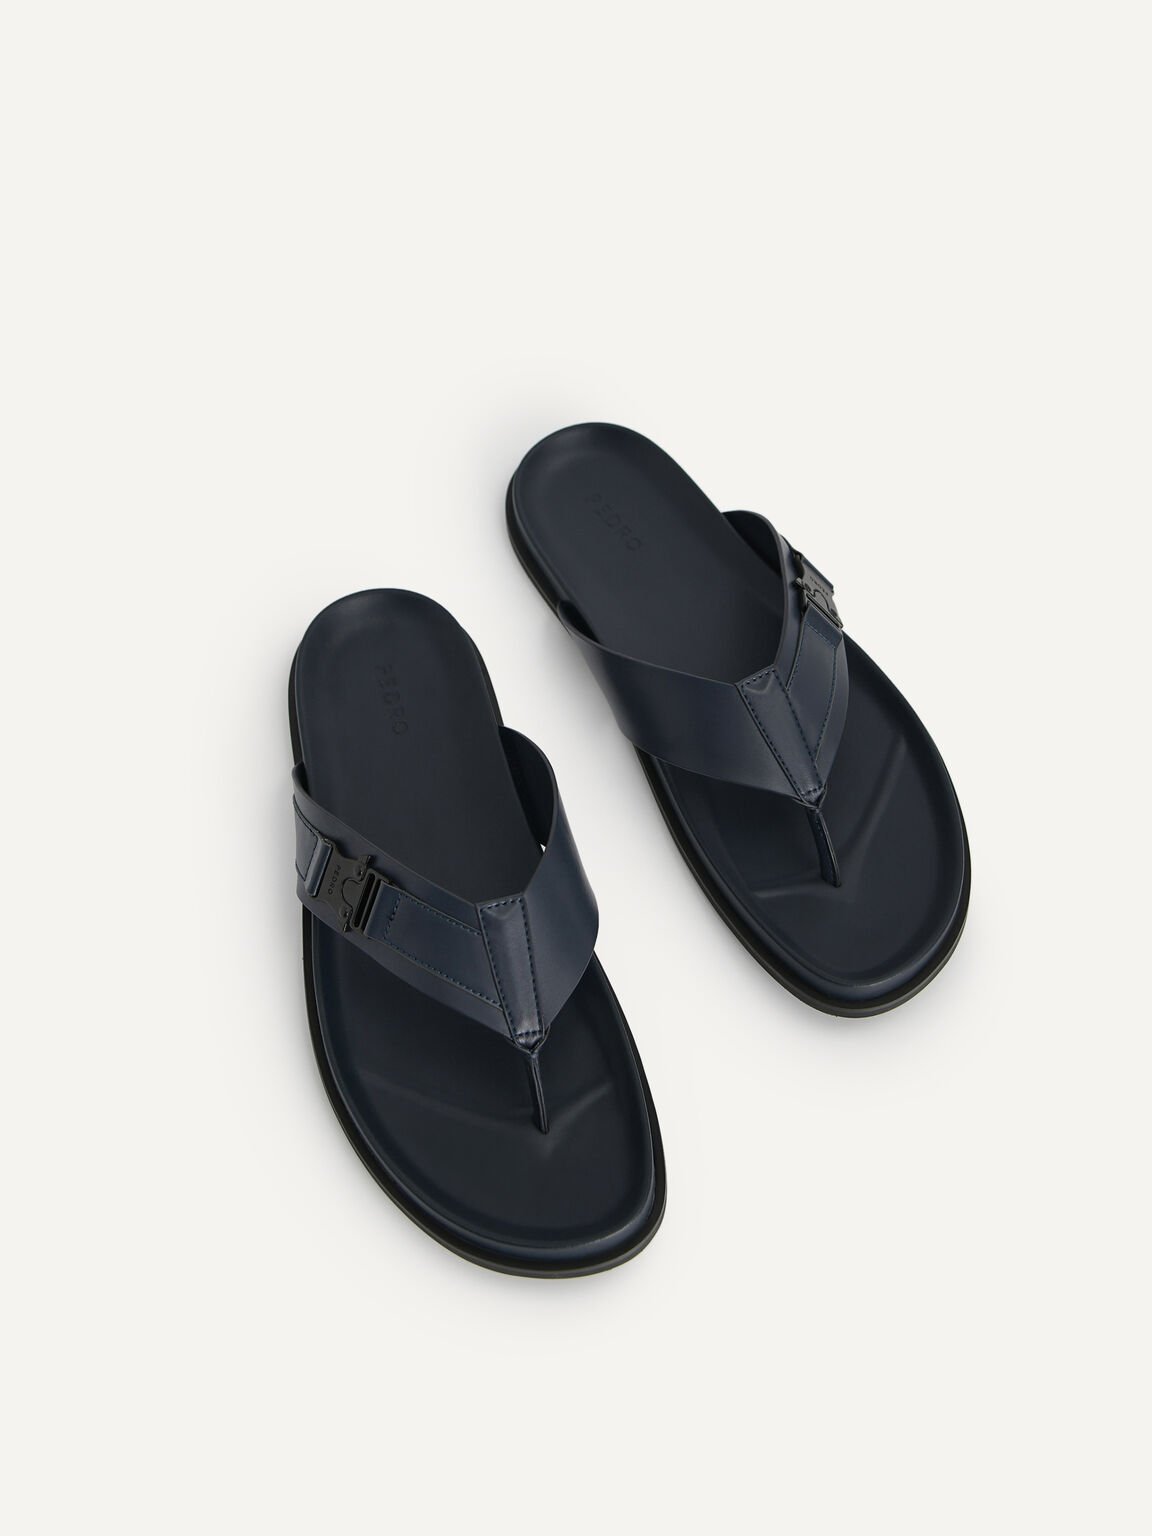 Thong Sandals, Navy, hi-res